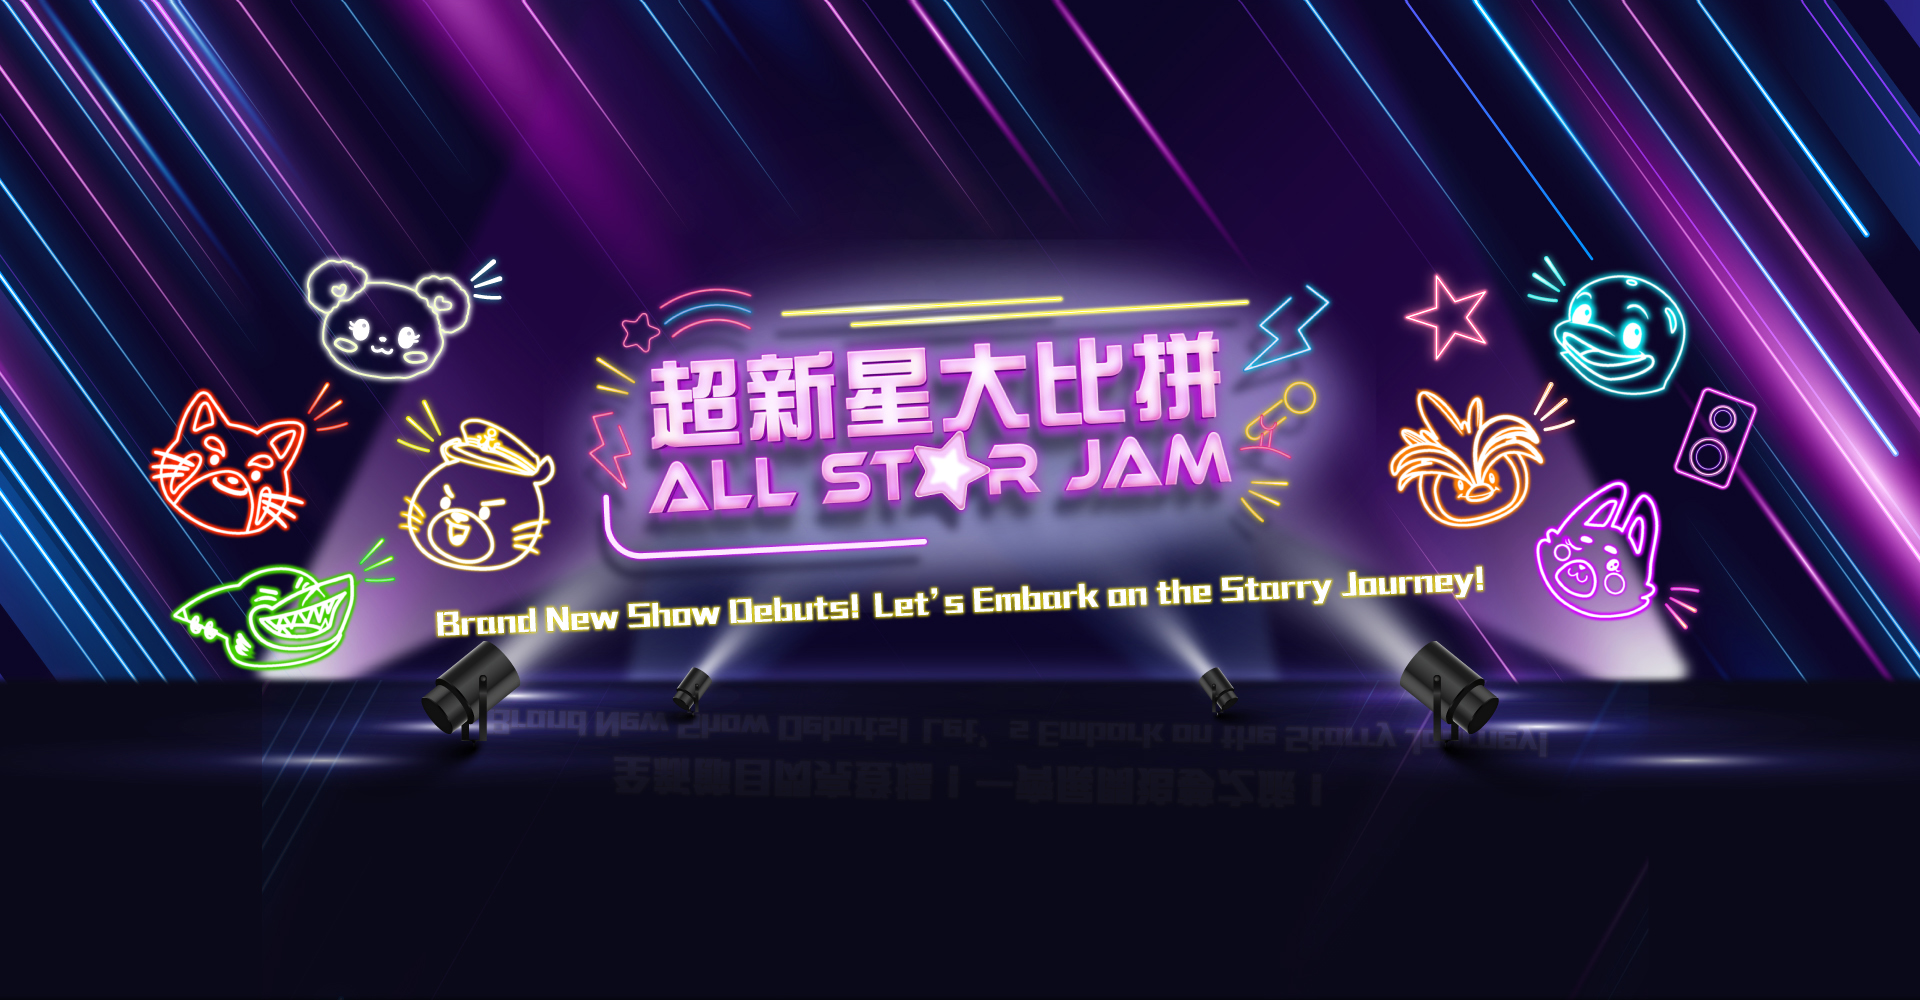 https://media.oceanpark.com.hk/files/s3fs-public/all-star-jam-desktop-banner-en.jpg